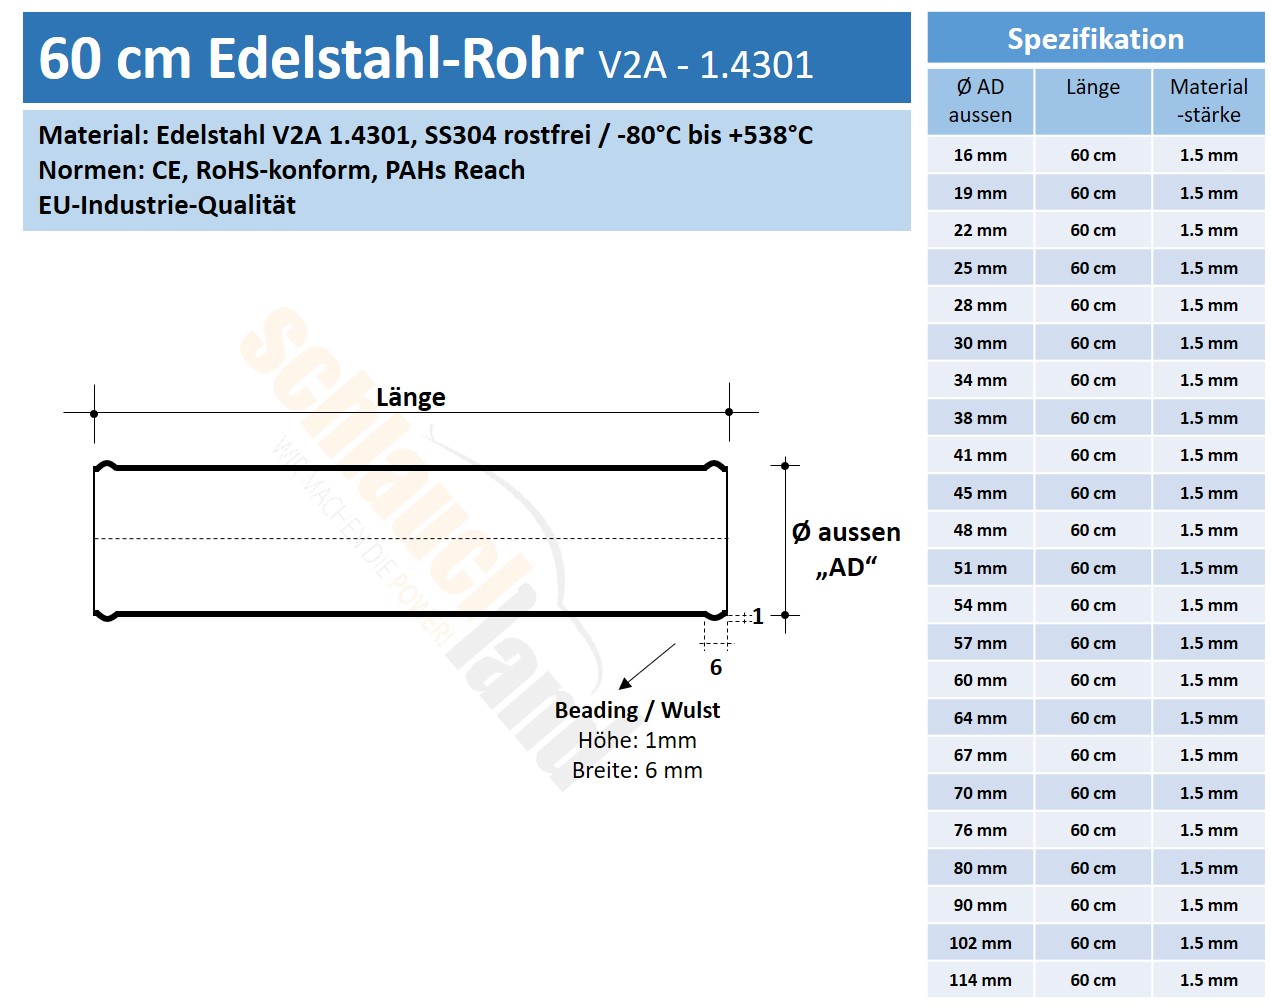 Edelstahl-Rohr 60cm V2A, Rohre, Edelstahl